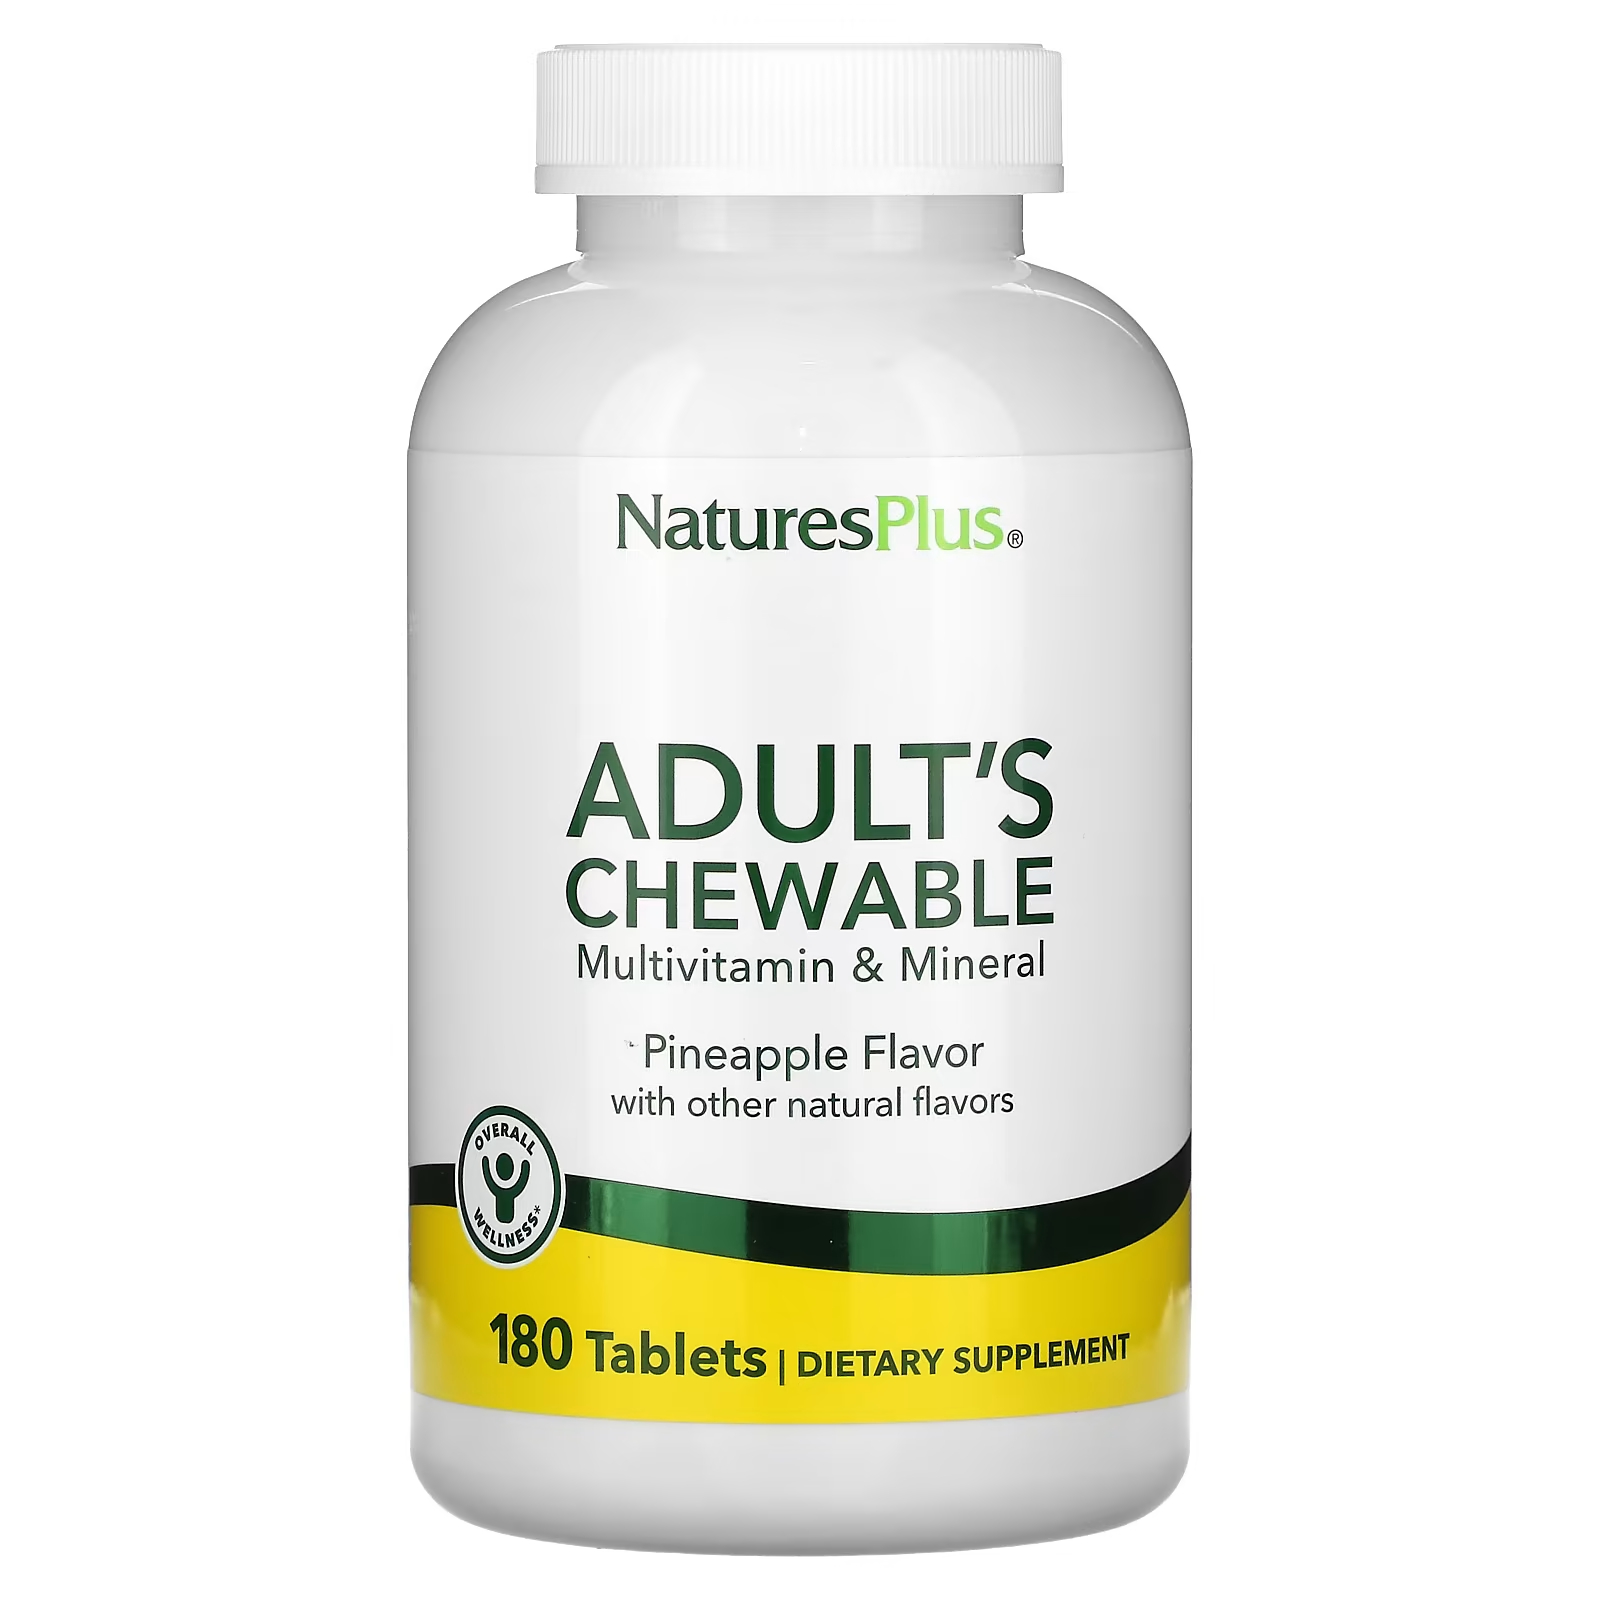 Мультивитамины NaturesPlus для взрослых со вкусом ананаса, 180 таблеток мультивитамины для пренатального применения naturesplus 180 таблеток